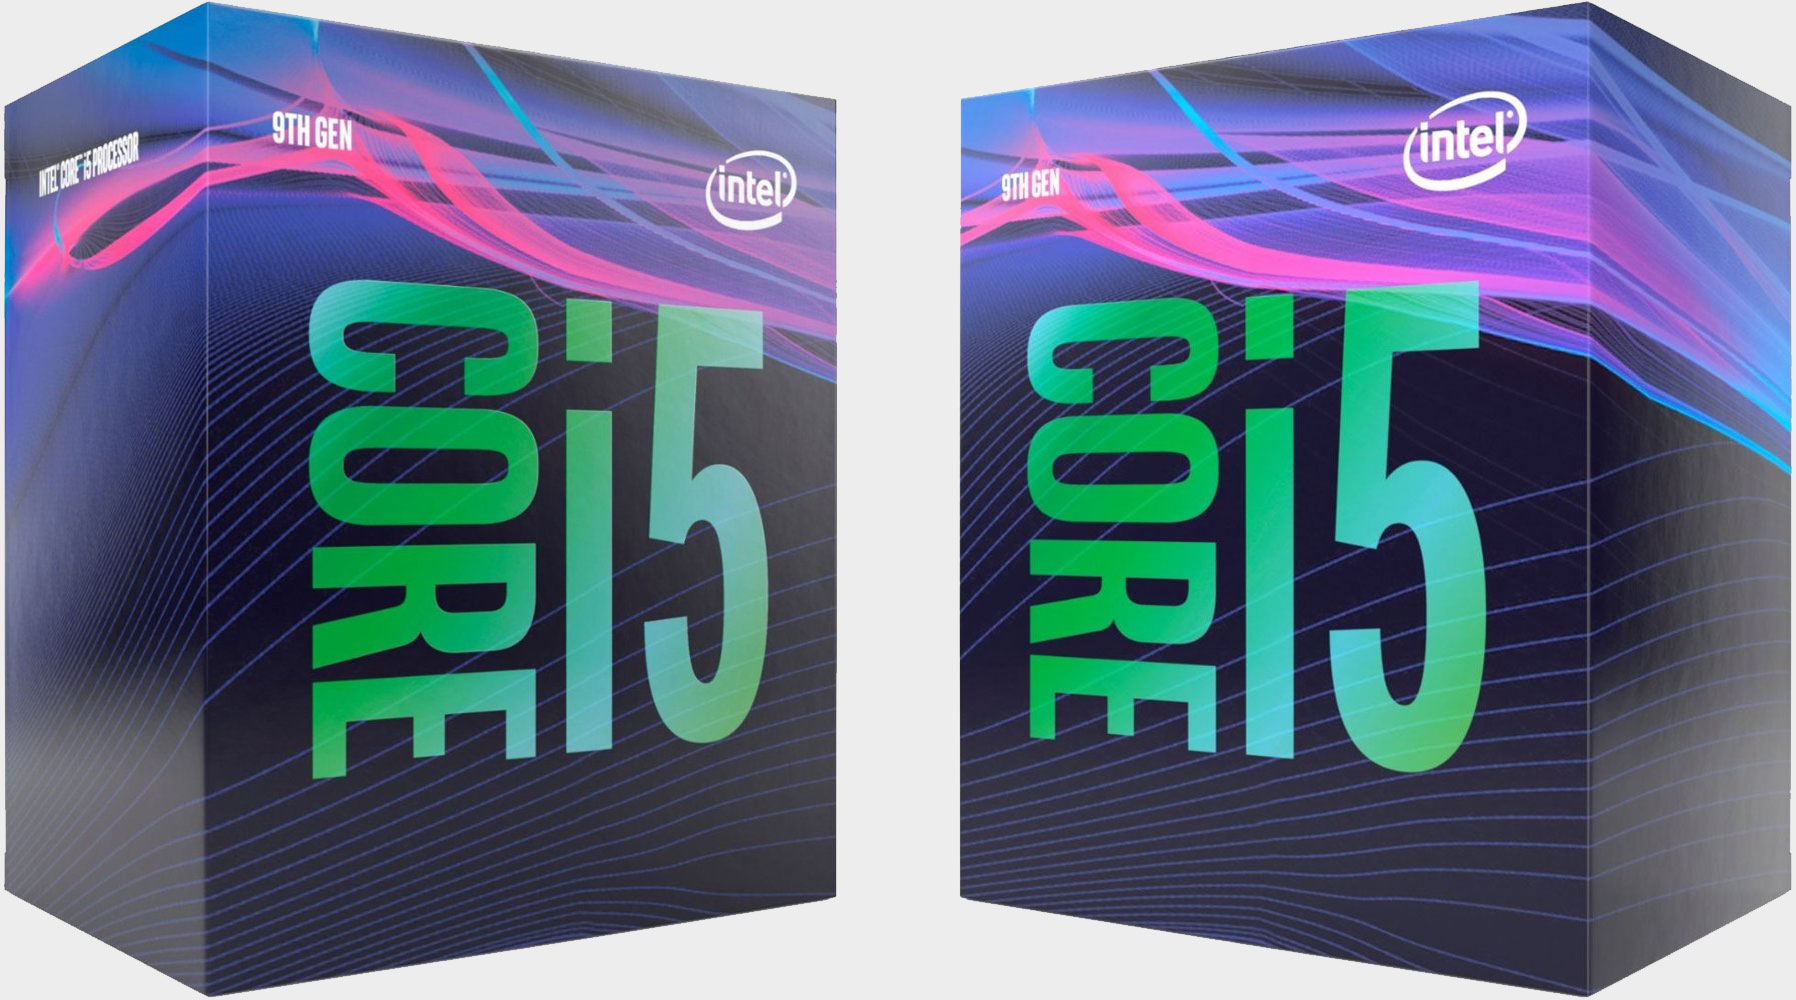  Should I buy an Intel Core i5 9400F?
 